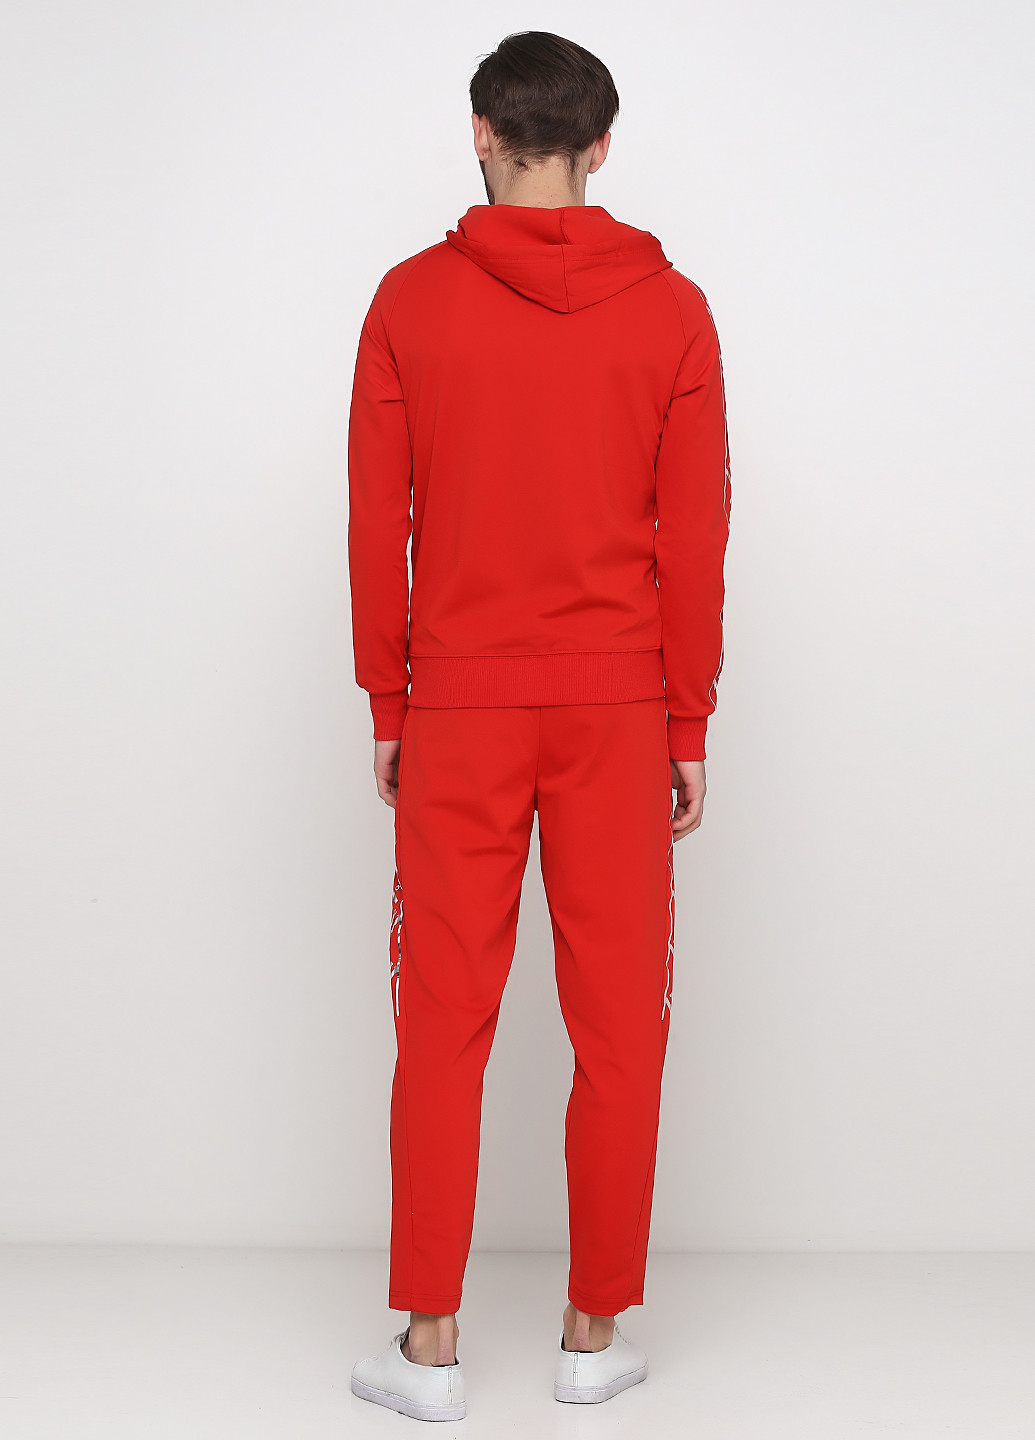 Червоний демісезонний костюм (толстовка, брюки) Madoc Jeans